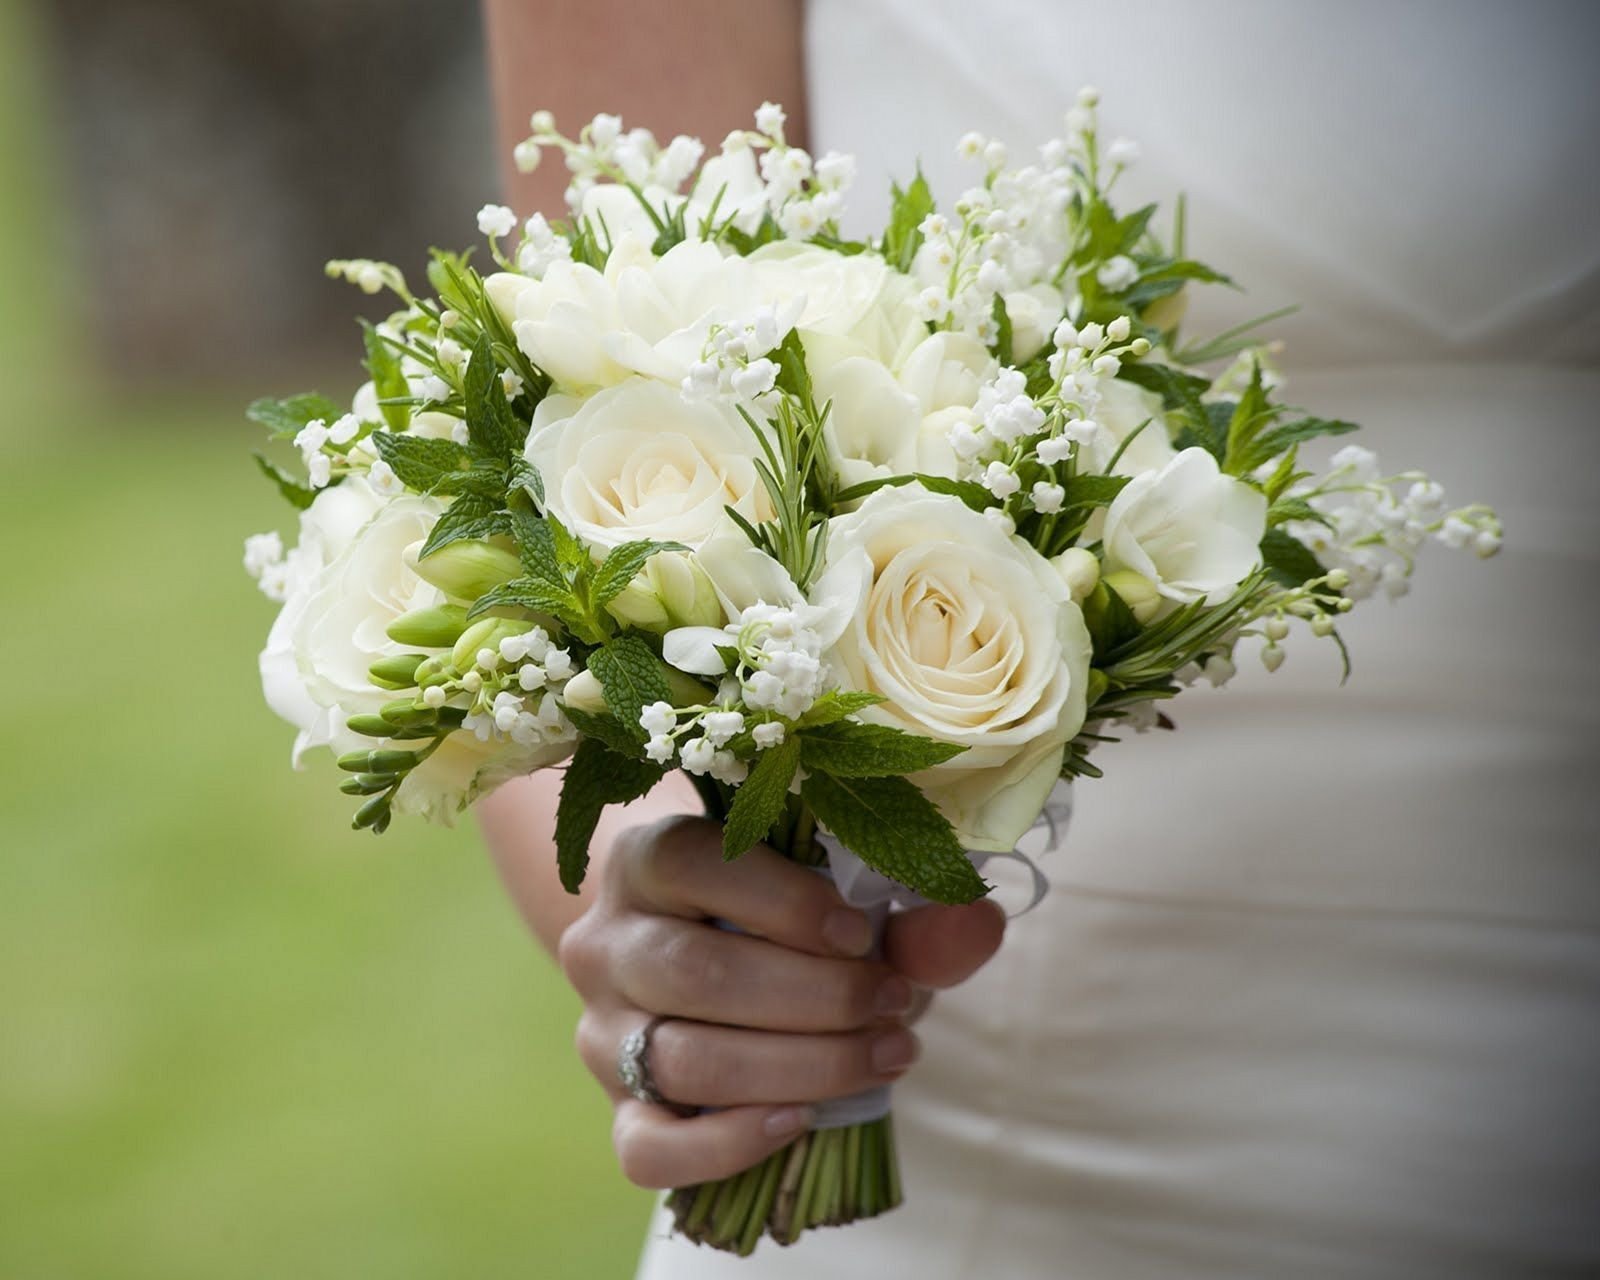 Интересные варианты для оформления классического белого свадебного букета Фото красивых букетов невесты в белых тонах на свадьбу в сочетании с другими цветами